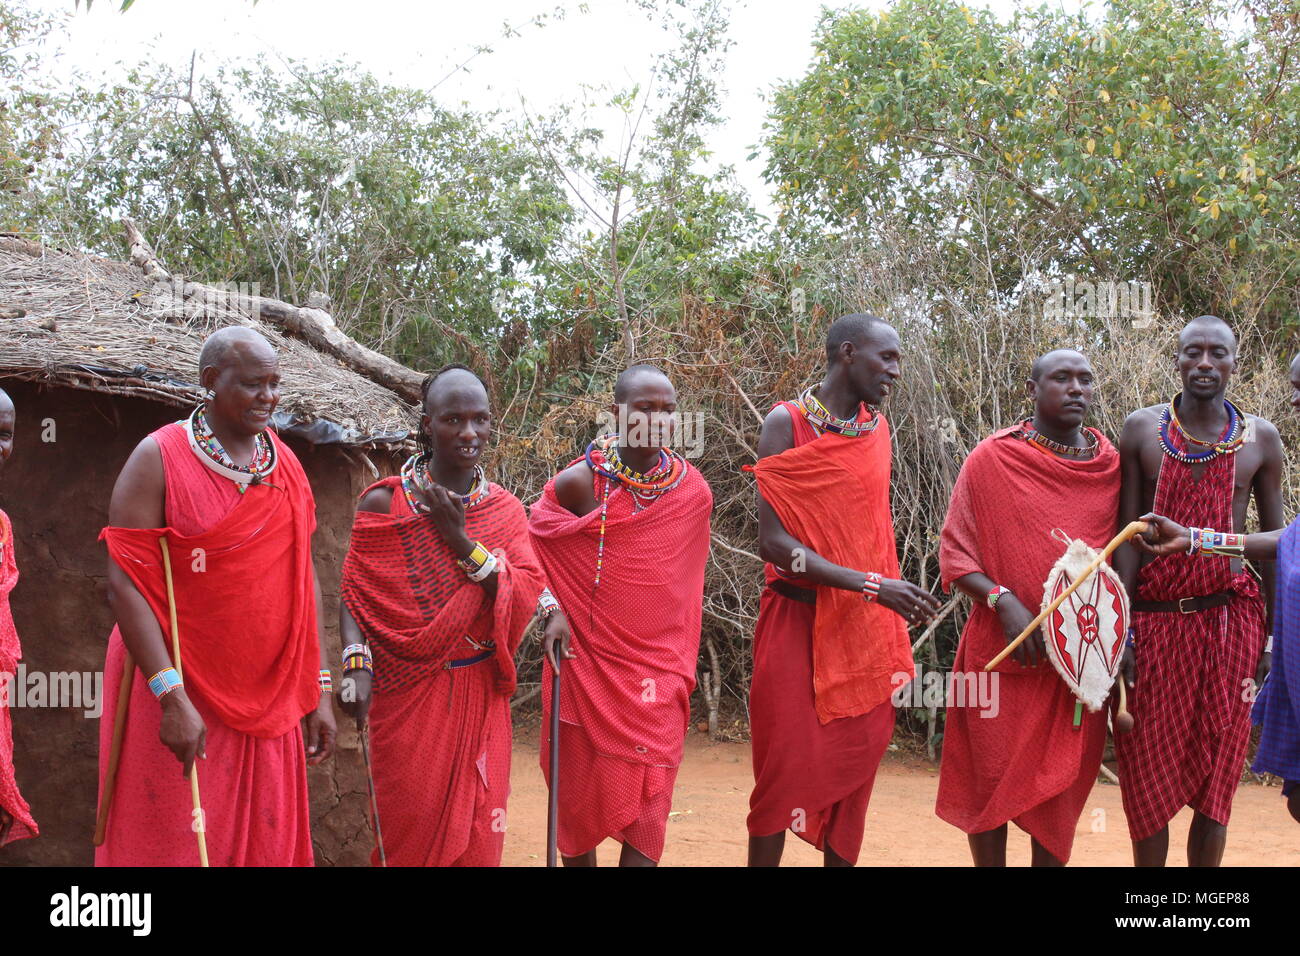 Los en el primer plano de la tribu de África, vestidos con sus trajes típicos rojos, lanzas y escudos, danza ritual en salta de stock -